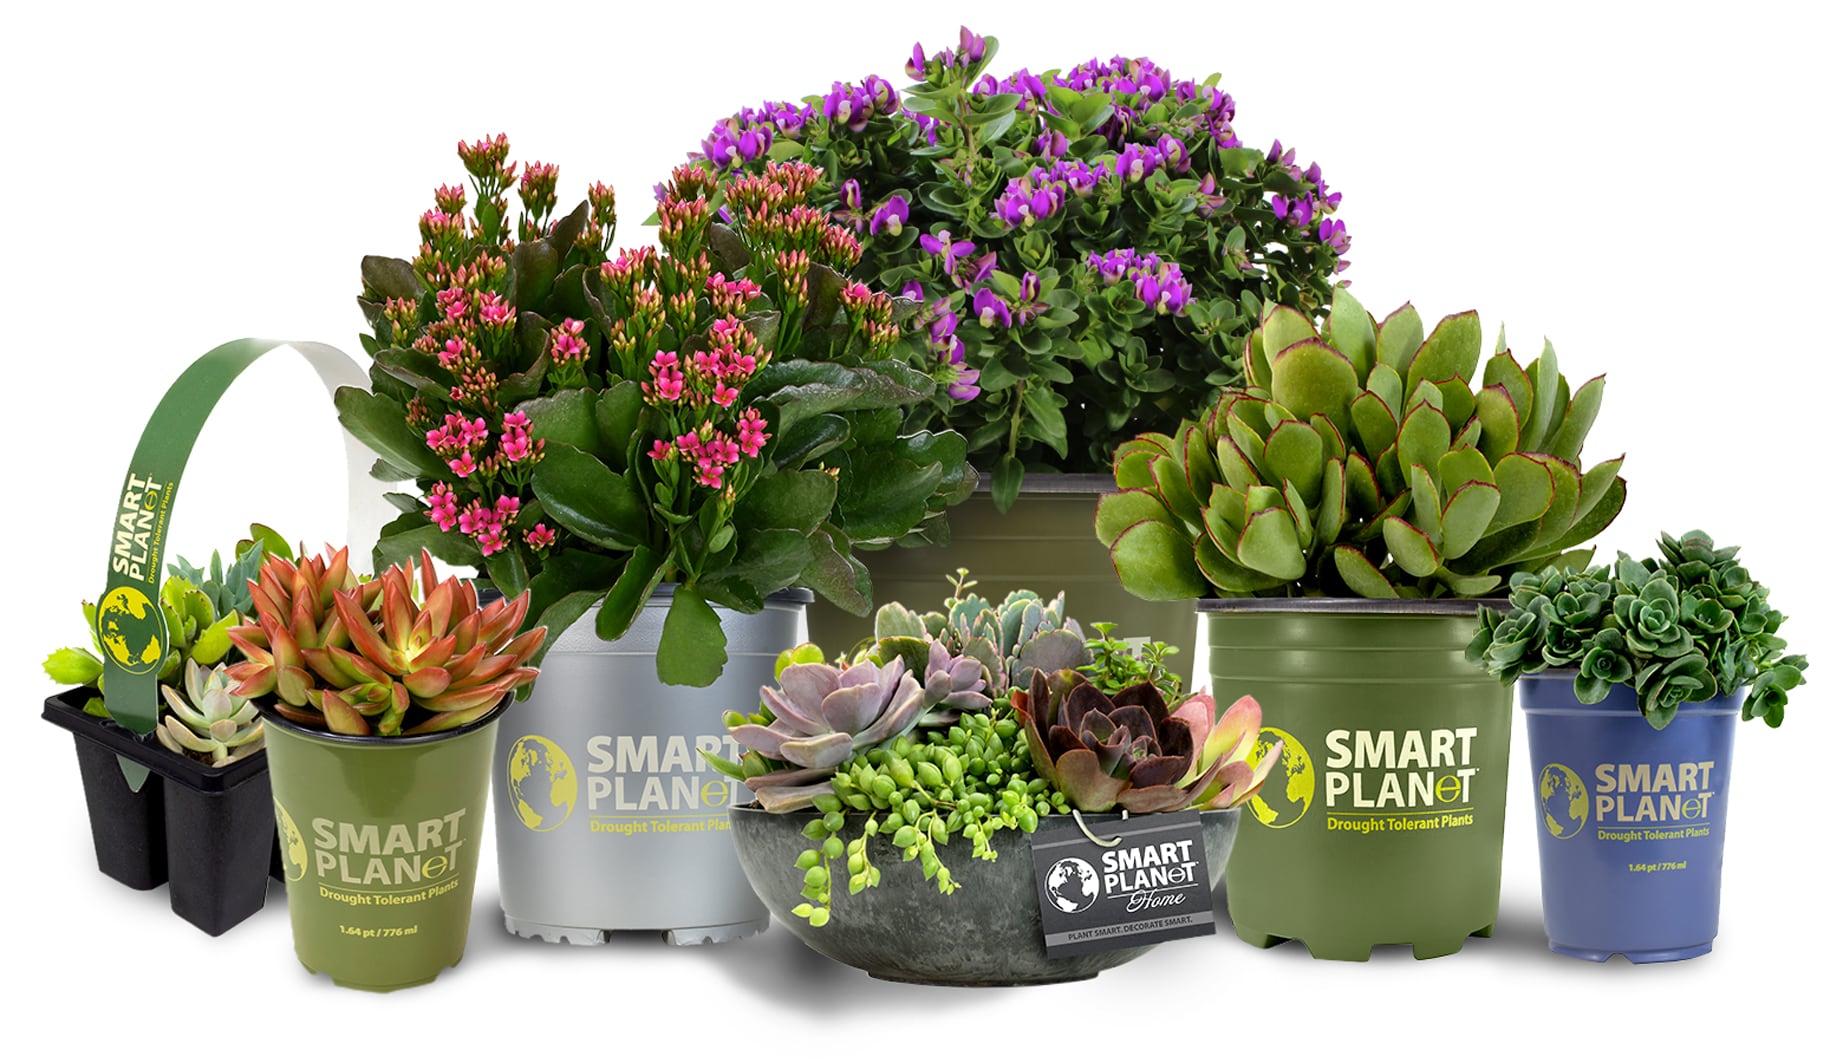 An assortment of Smart Planet plants